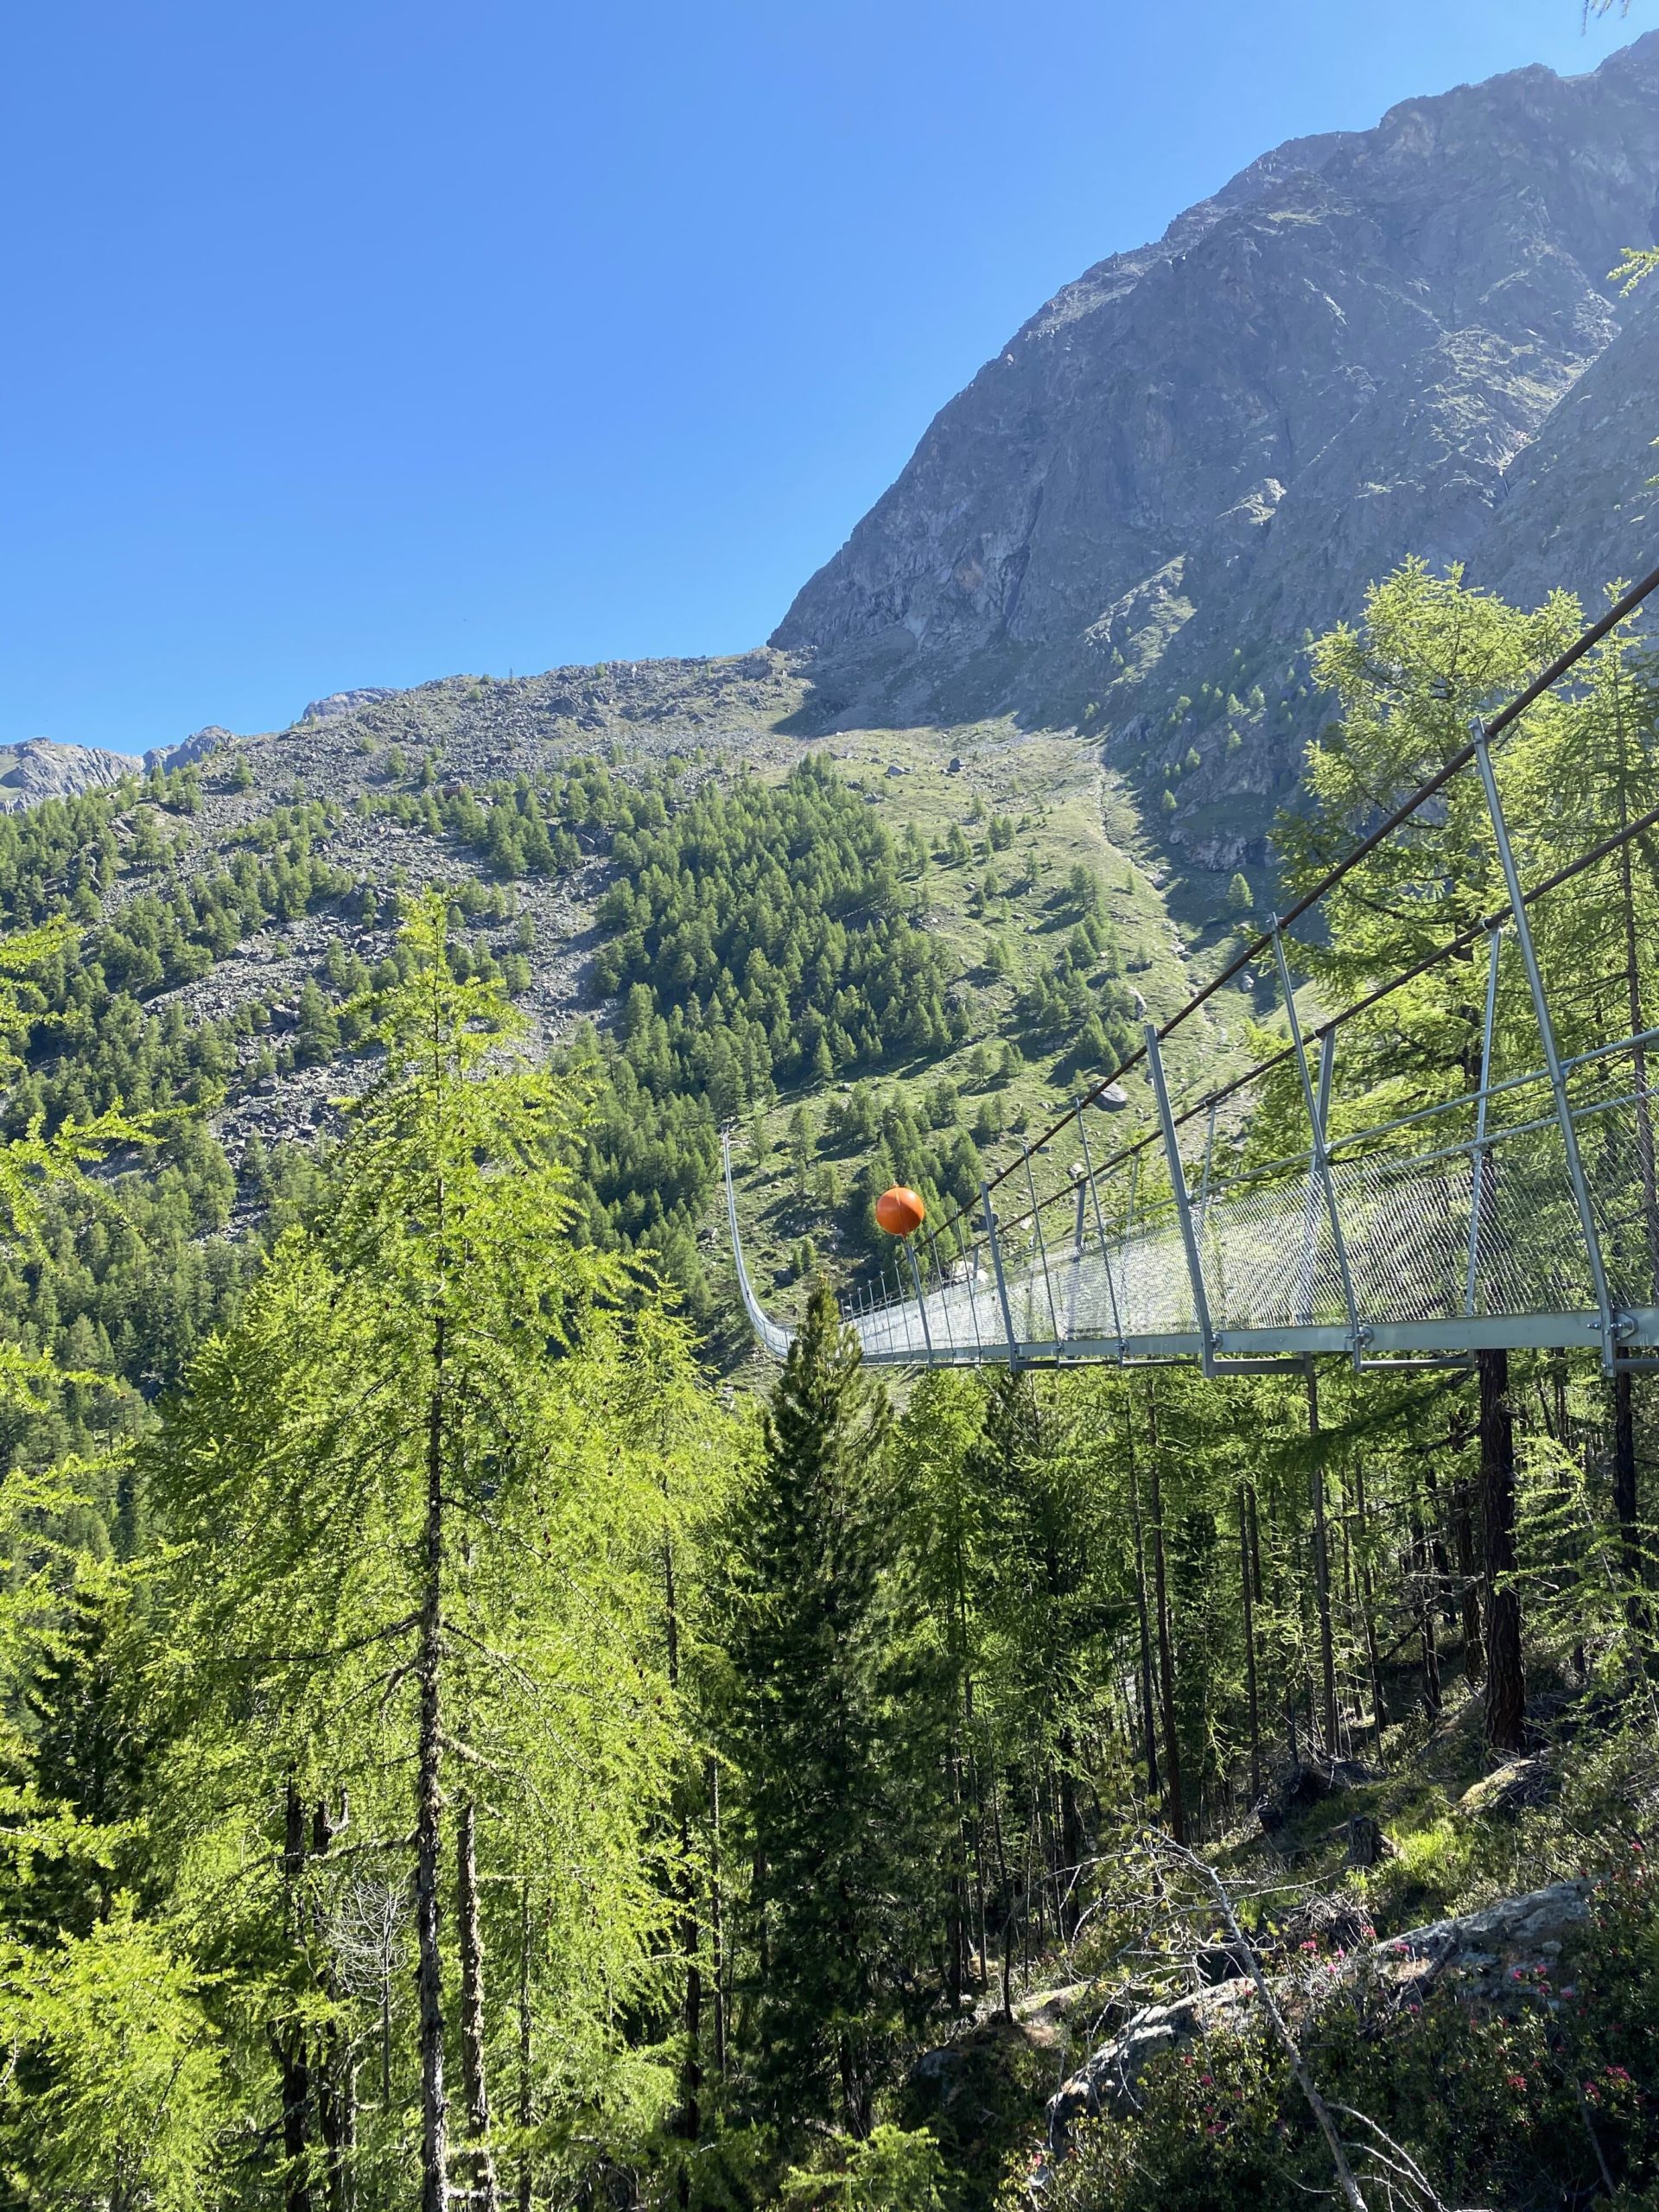 Suspension bridge in Randa in Switzerland